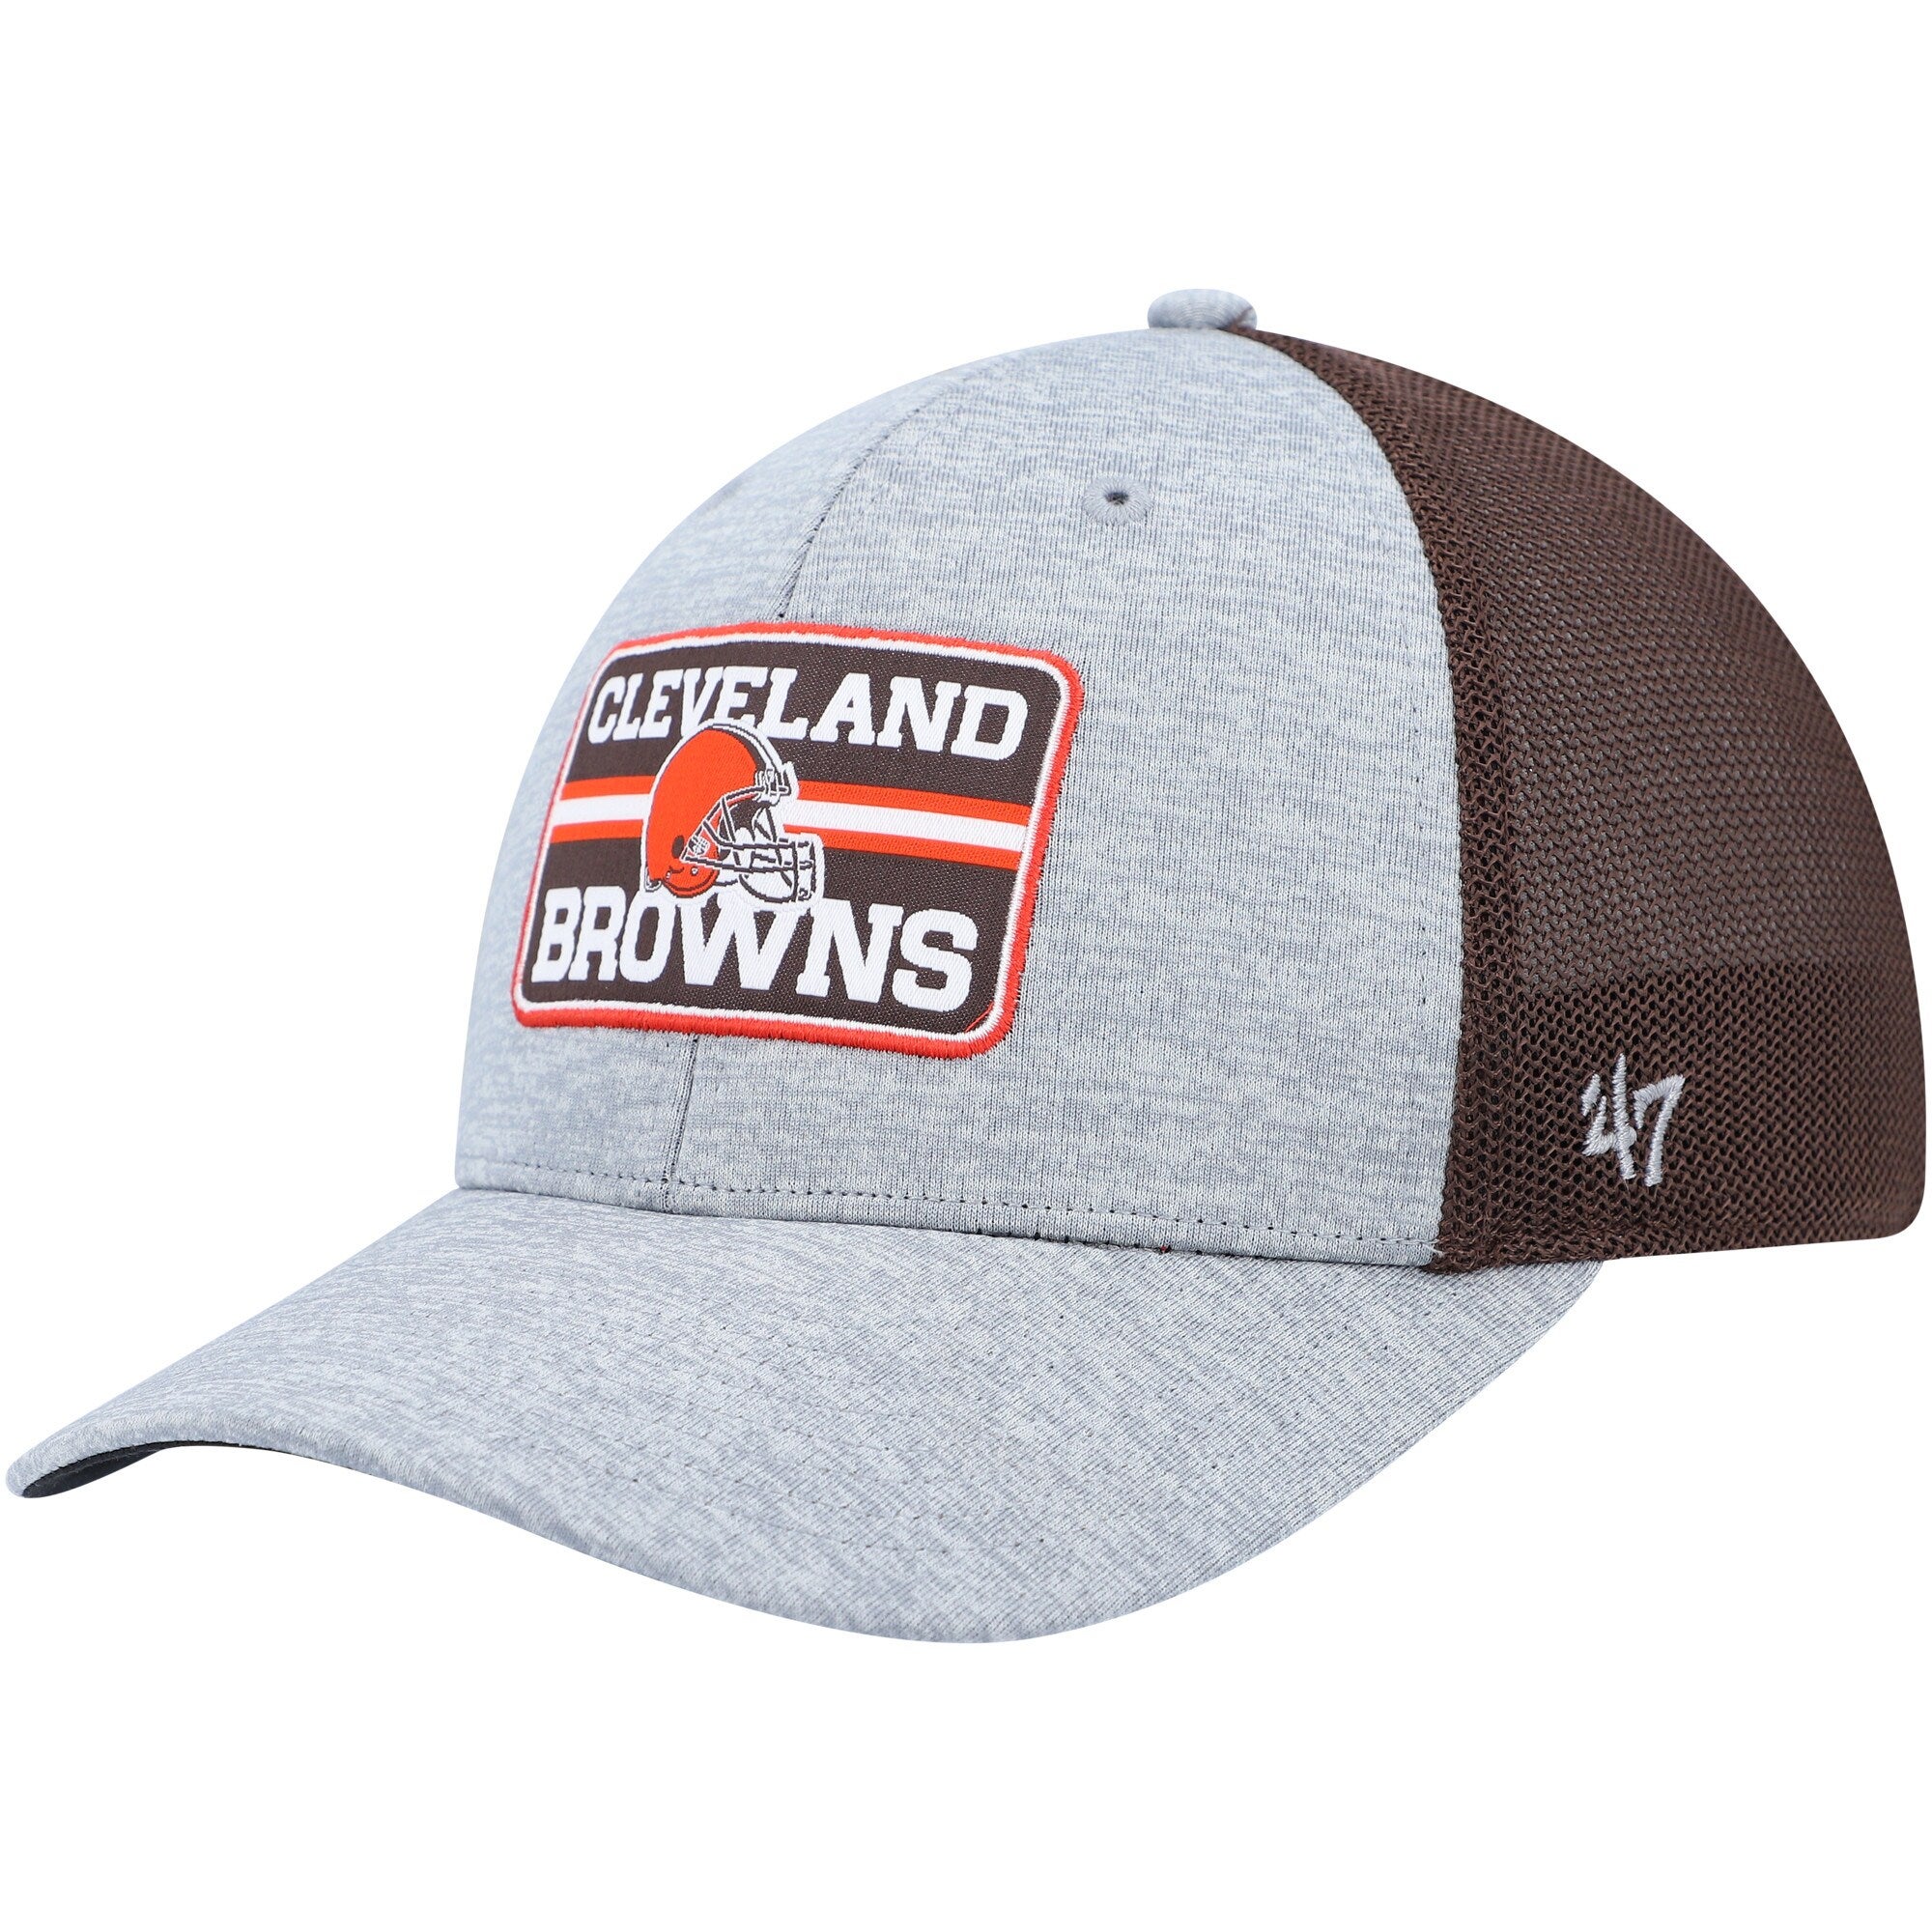 47 Brand Browns Motivator Flex Hat - Men's